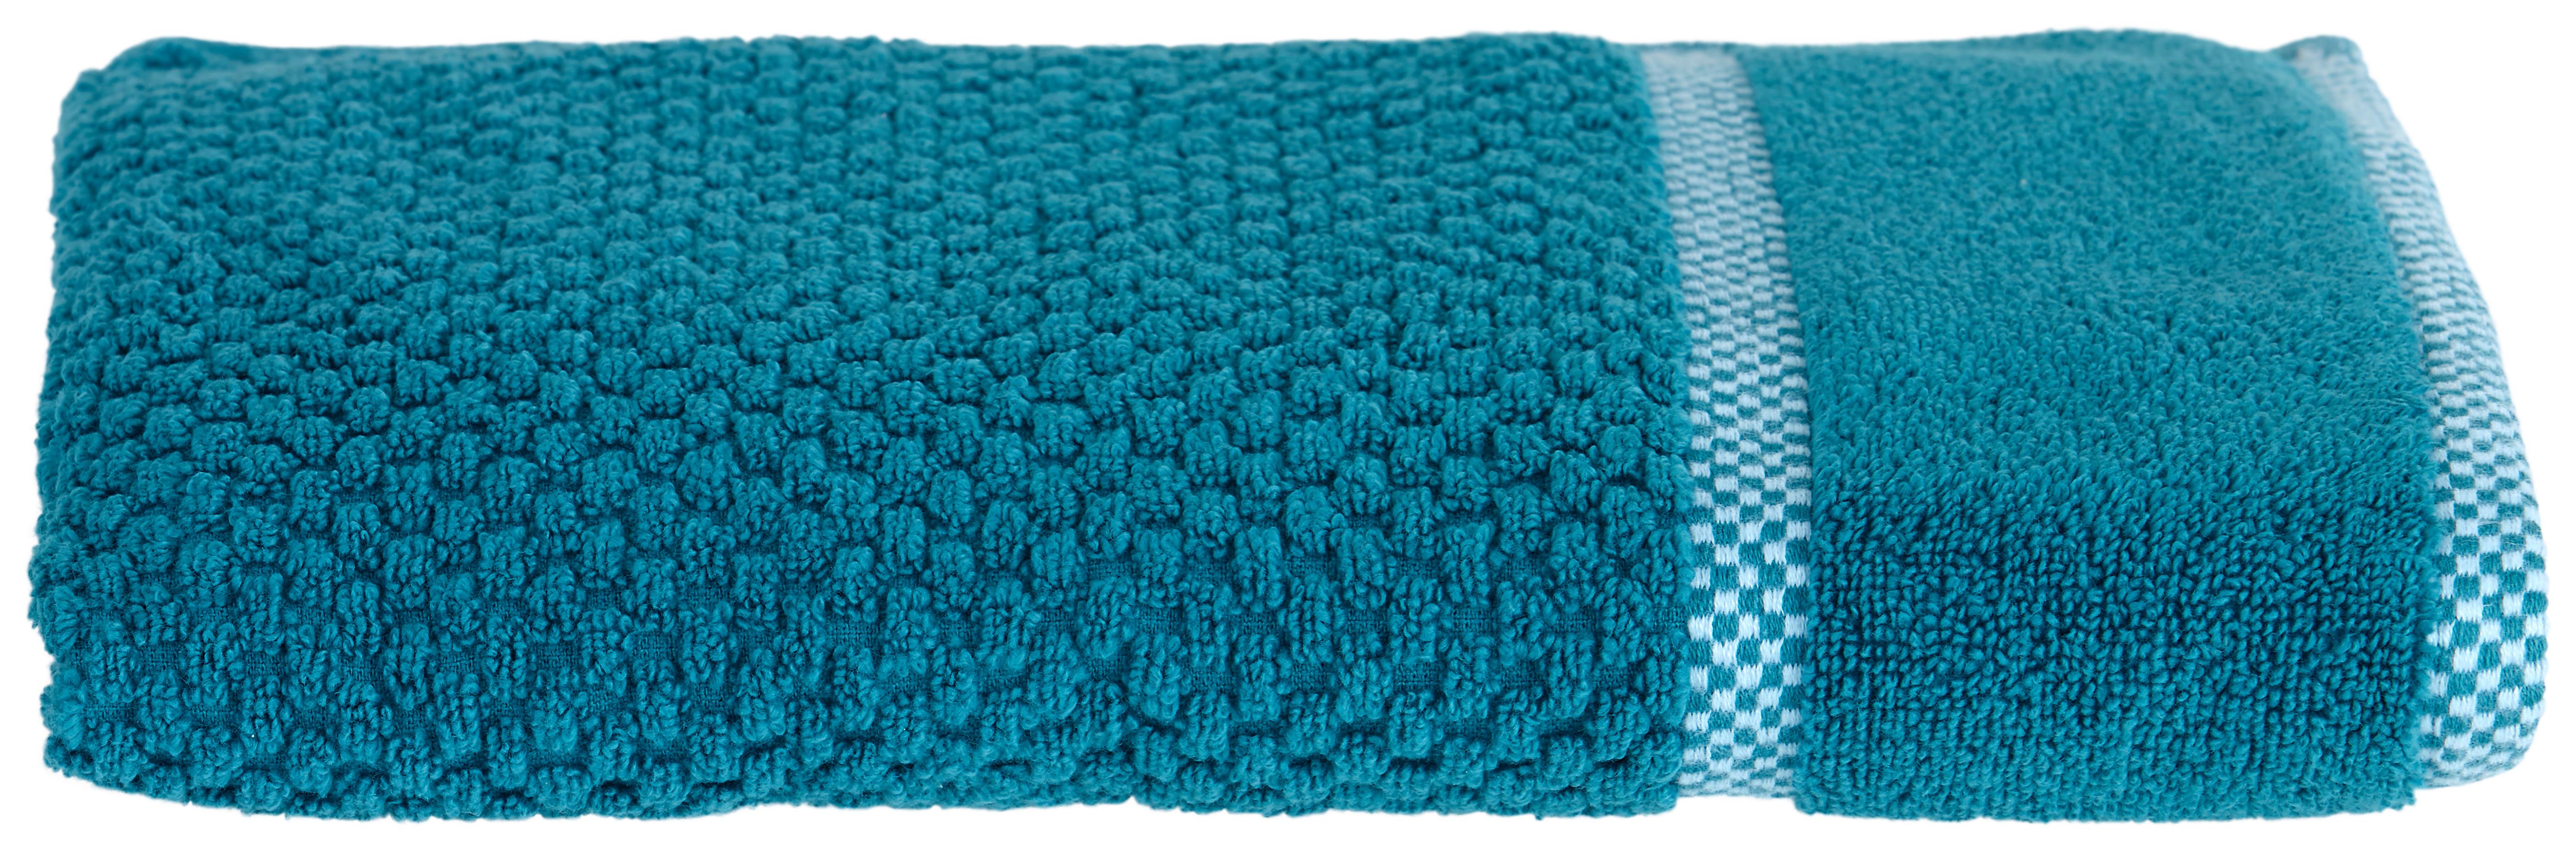 Azurblau Baumwolle in Handtuch aus